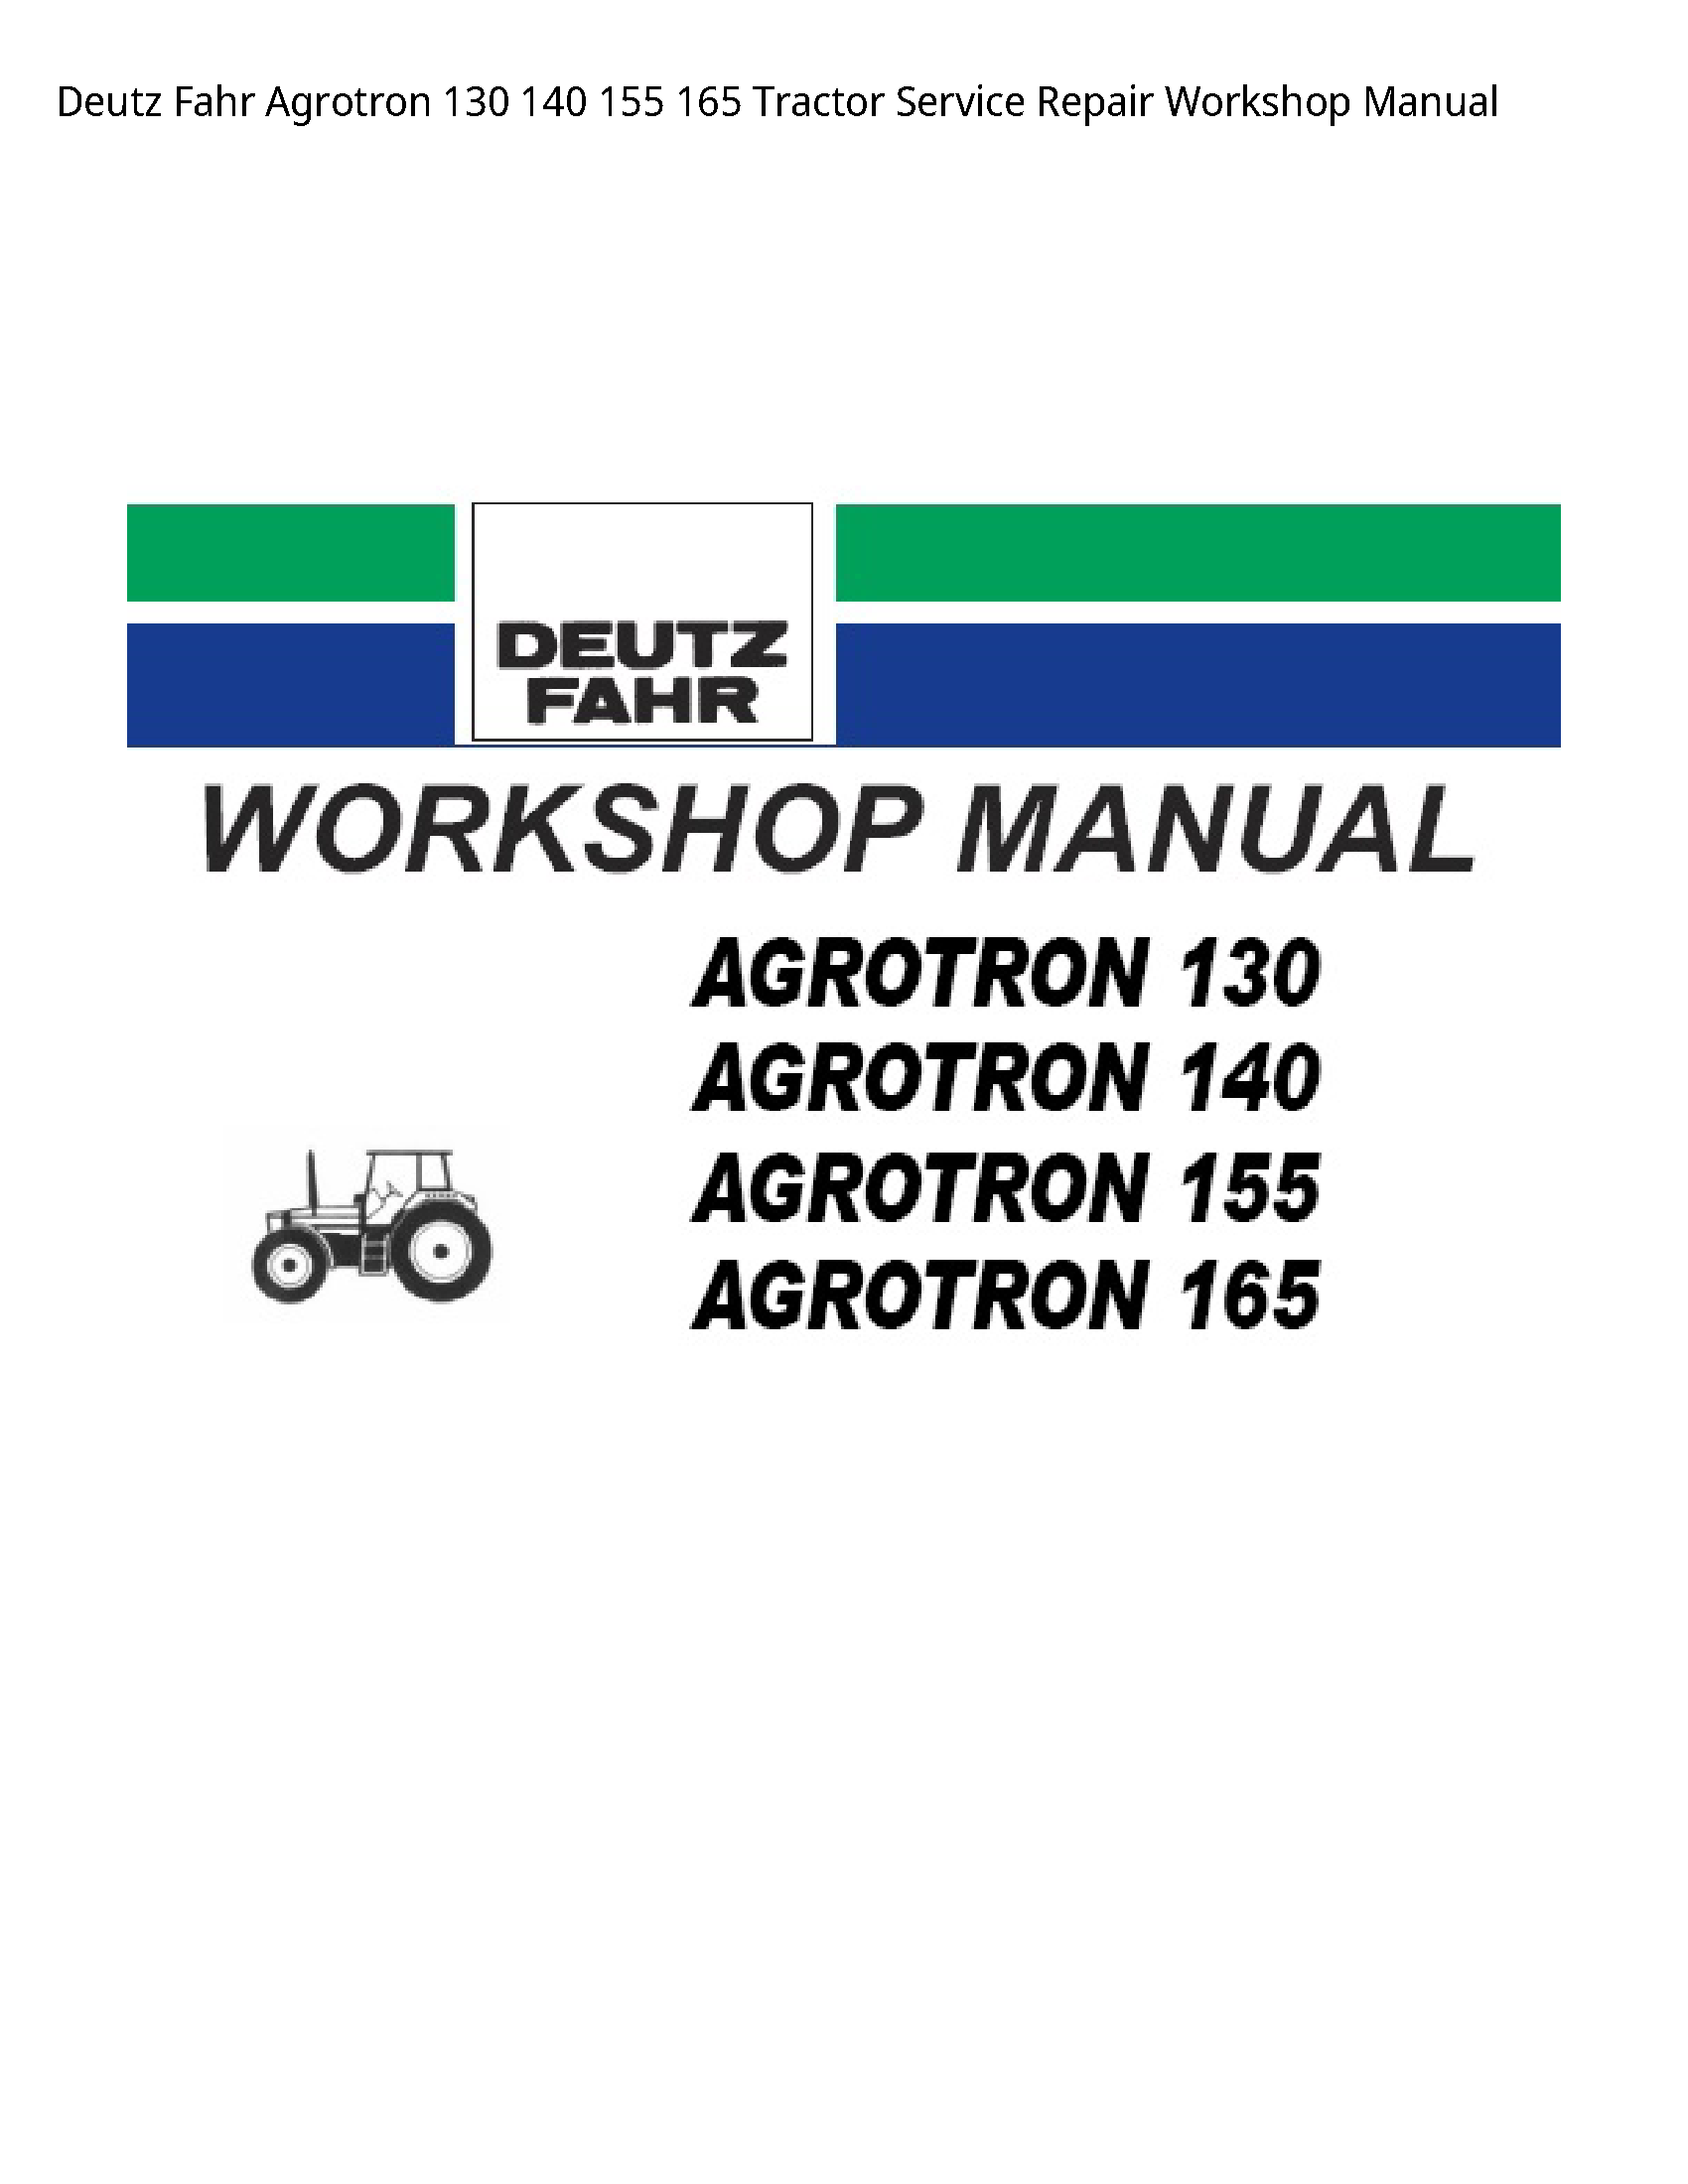 Deutz 130 Fahr Agrotron Tractor manual